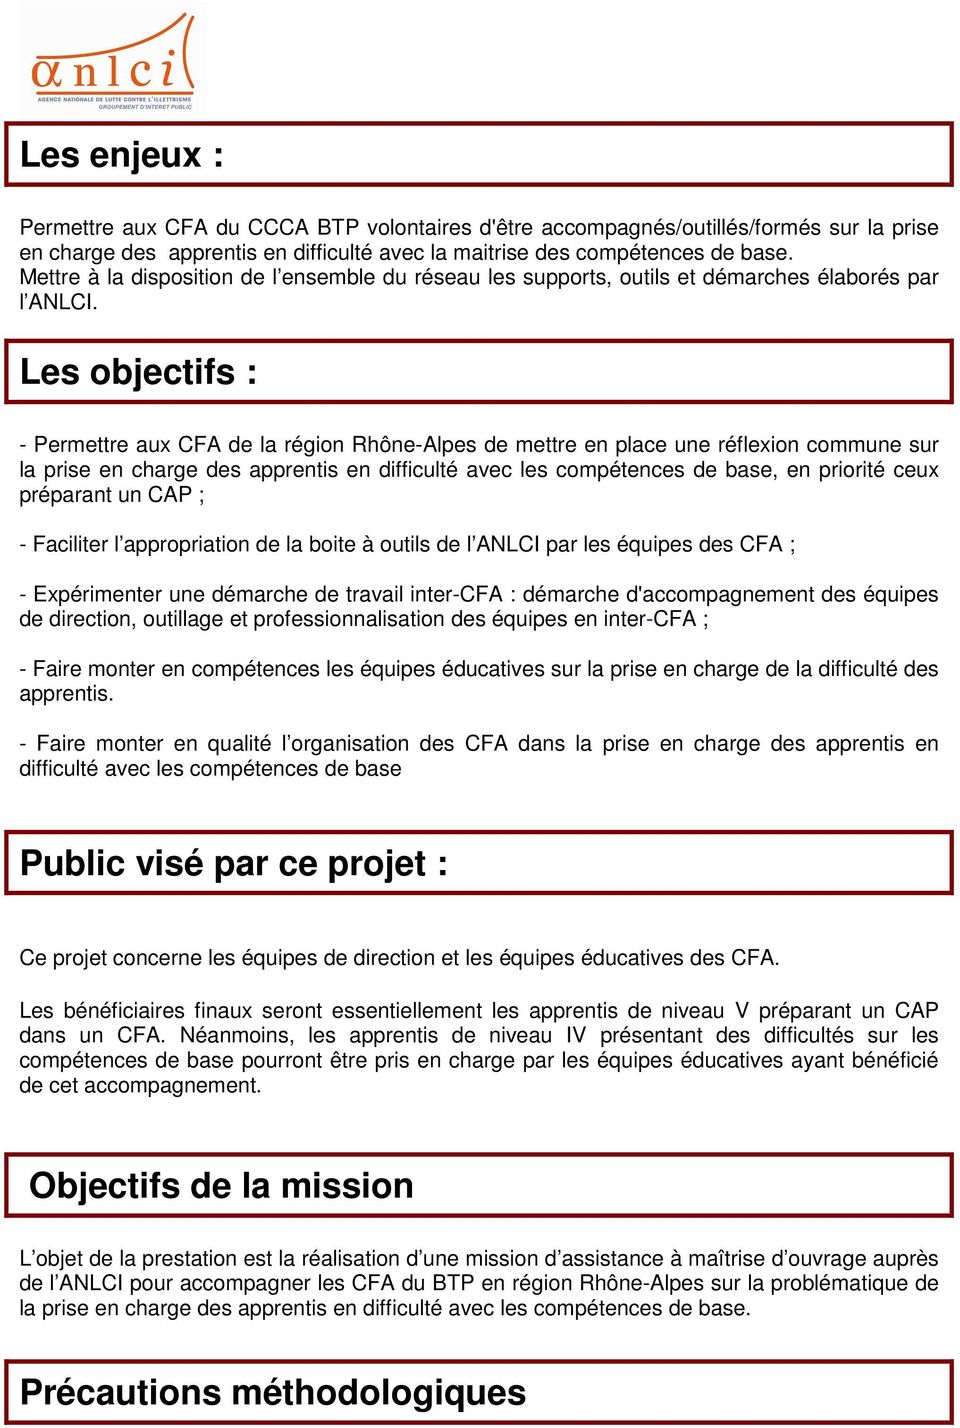 Les objectifs : - Permettre aux CFA de la région Rhône-Alpes de mettre en place une réflexion commune sur la prise en charge des apprentis en difficulté avec les compétences de base, en priorité ceux